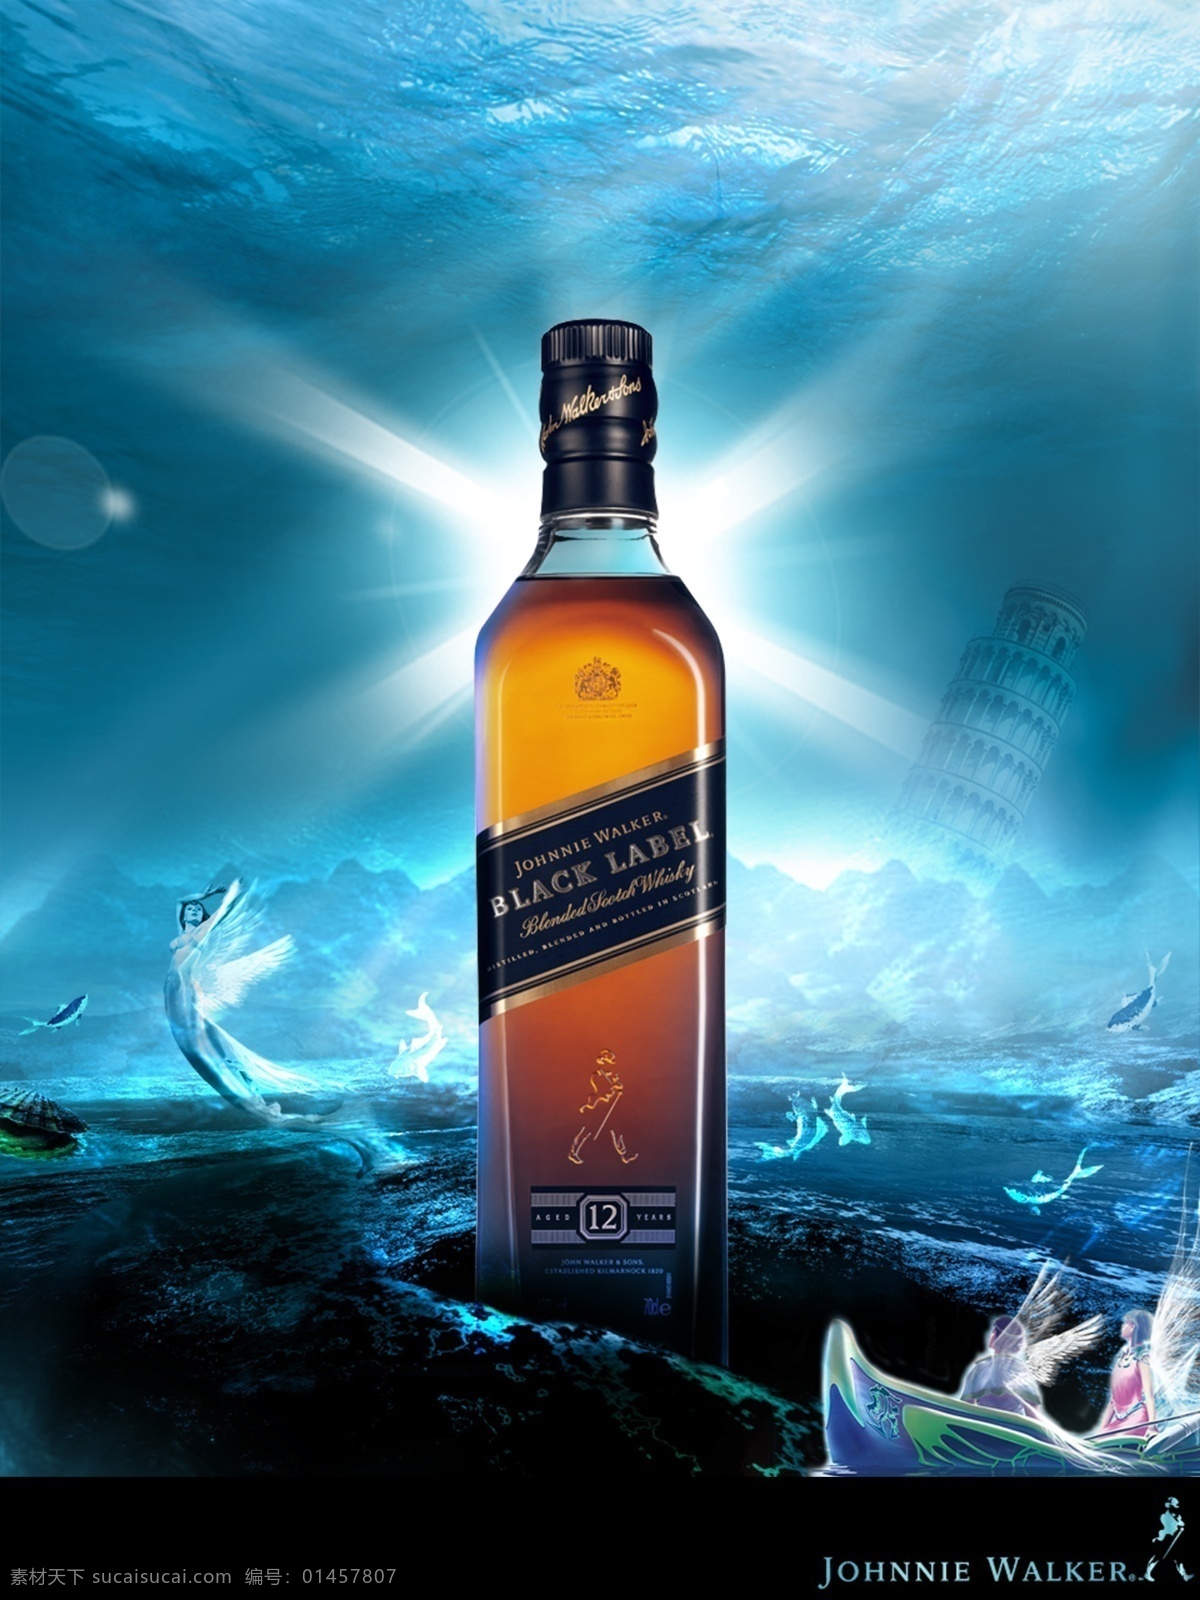 尊尼获加 洋酒 黑瓶 方瓶 星光 深海 海精灵 比萨斜塔 大海 波浪 鱼 广告设计模板 源文件